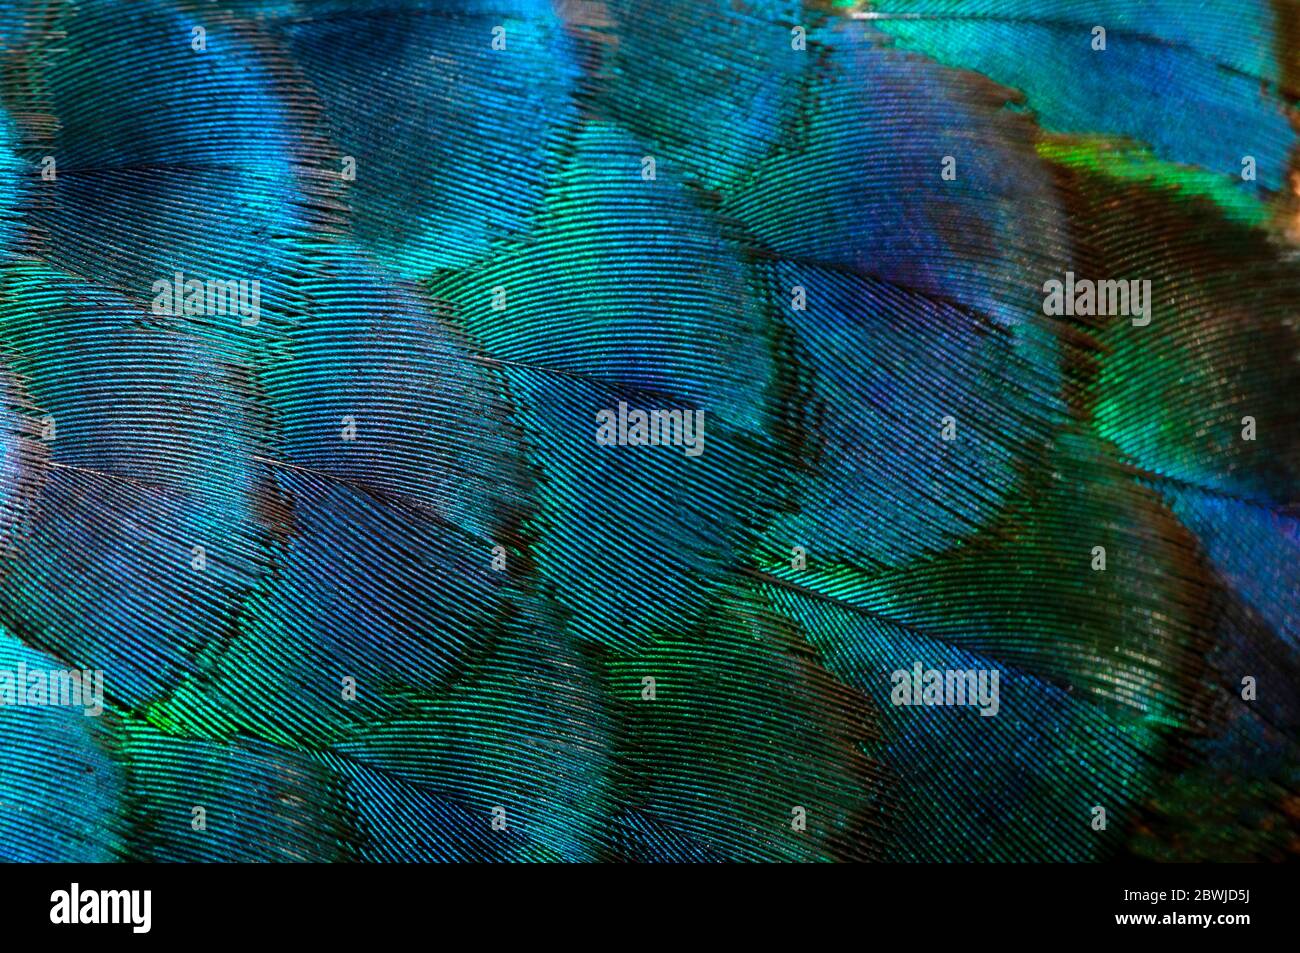 Primeros planos Peacocks, detalles coloridos y hermosas plumas de pavo real.Fotografía macro. Foto de stock